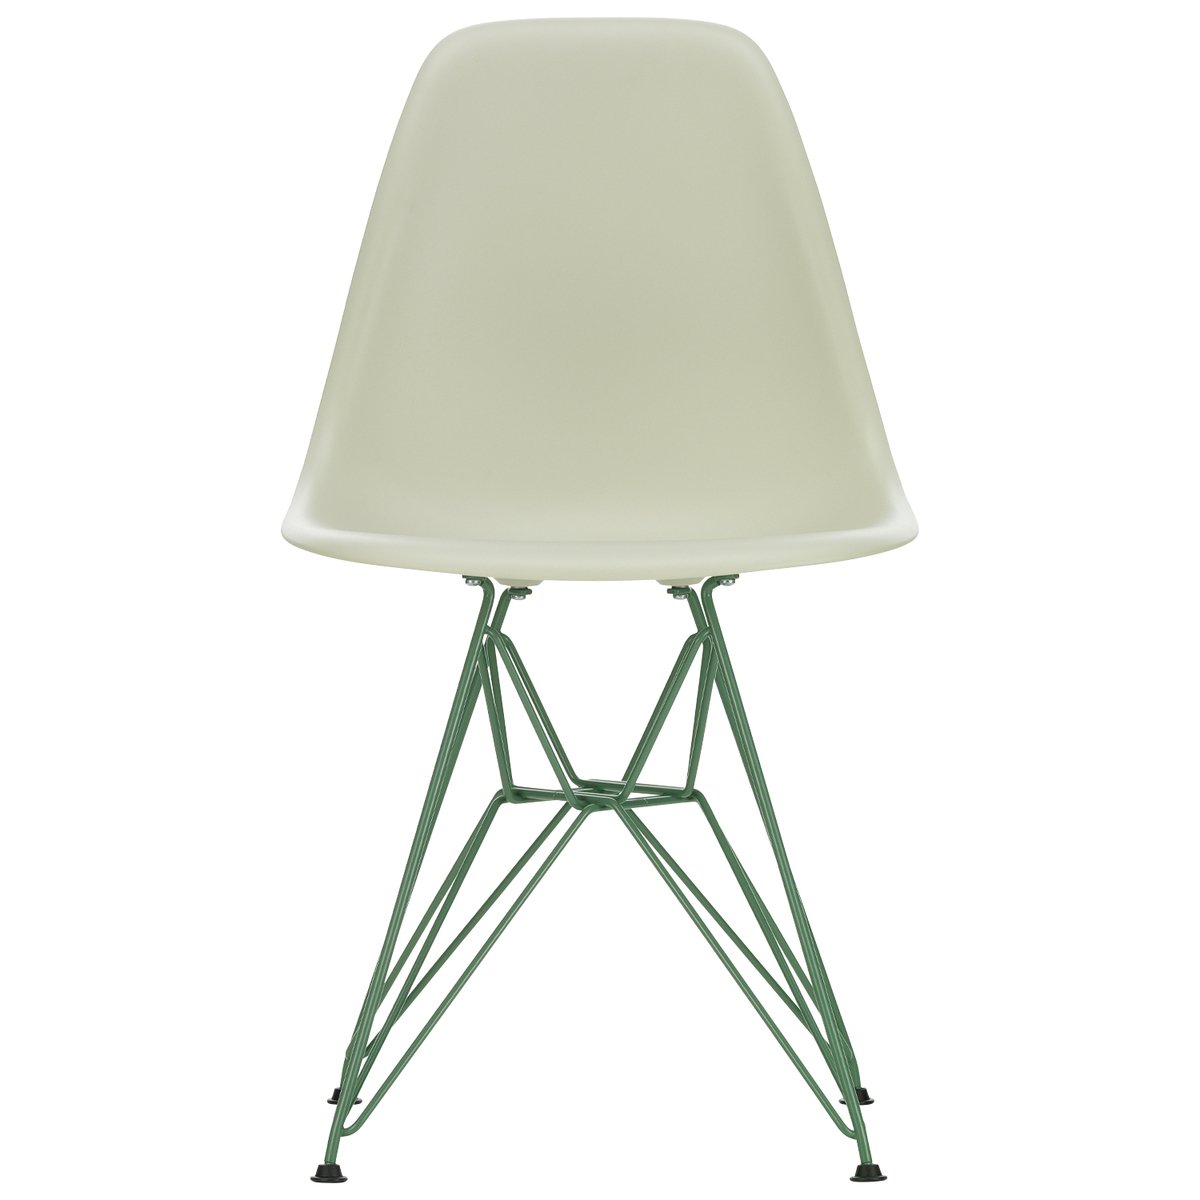 Vitra Eames DSR tuoli, Eames sea foam green - pebble